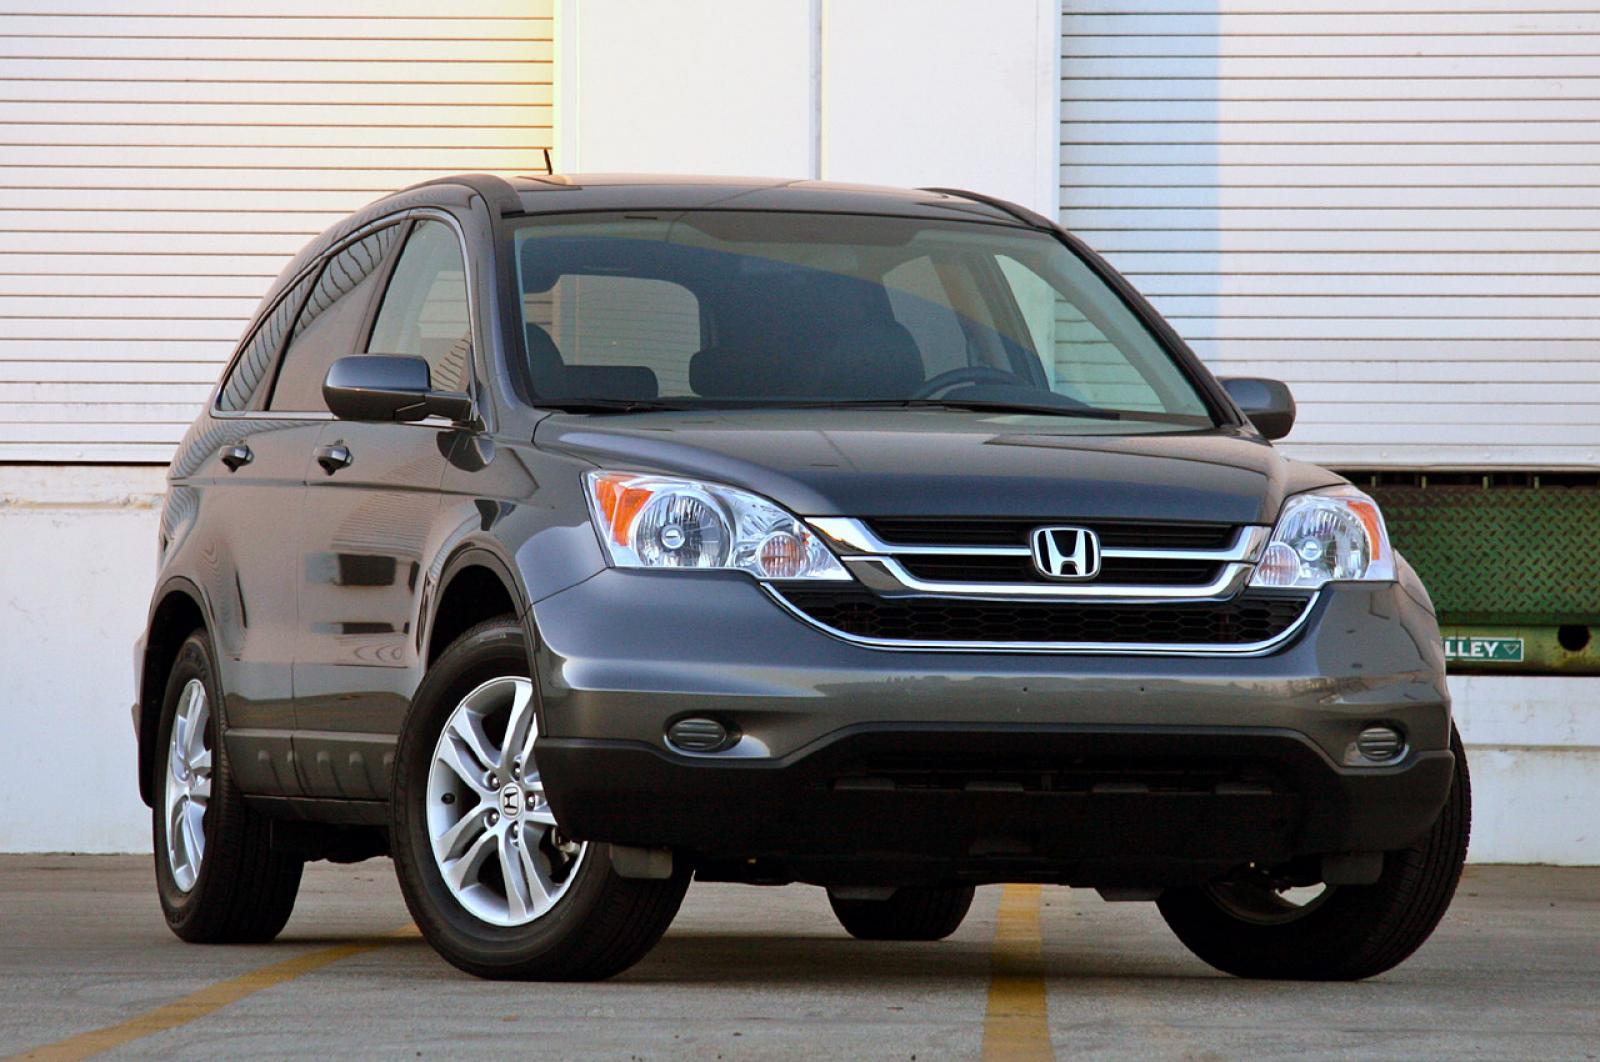 Хонда срв купить бу авито. Honda CR-V 2010. Honda CRV 2010. Honda CR-V 3 2010. Хонда СРВ 2010.